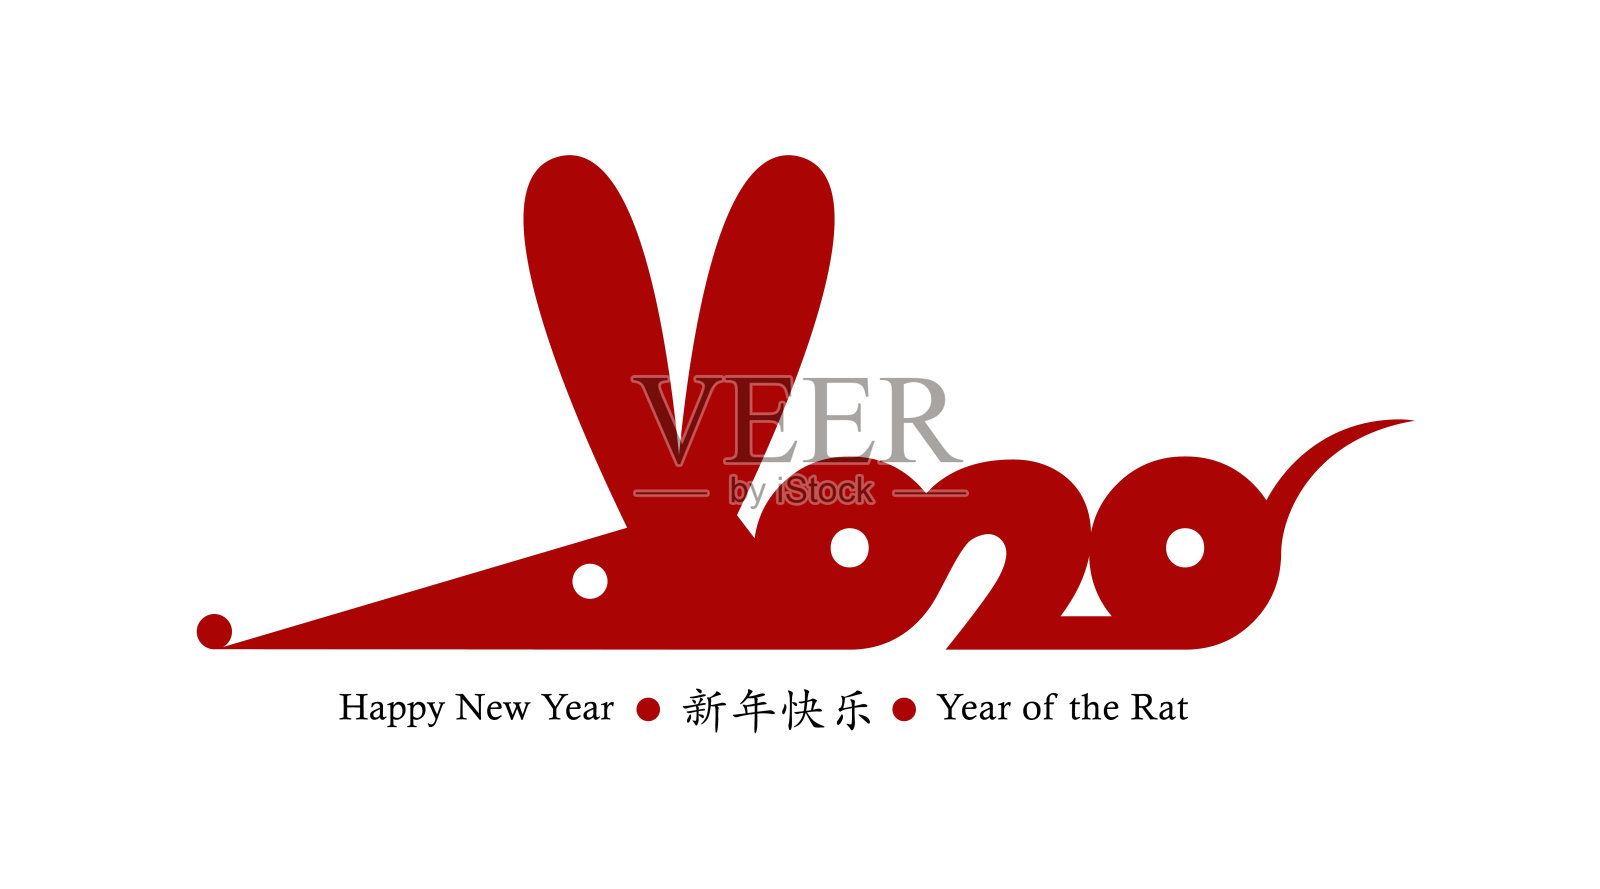 2020年的鼠年。向量名片设计。手绘红色老鼠图标。星座的象征。中国象形文字翻译:2020年新年快乐插画图片素材